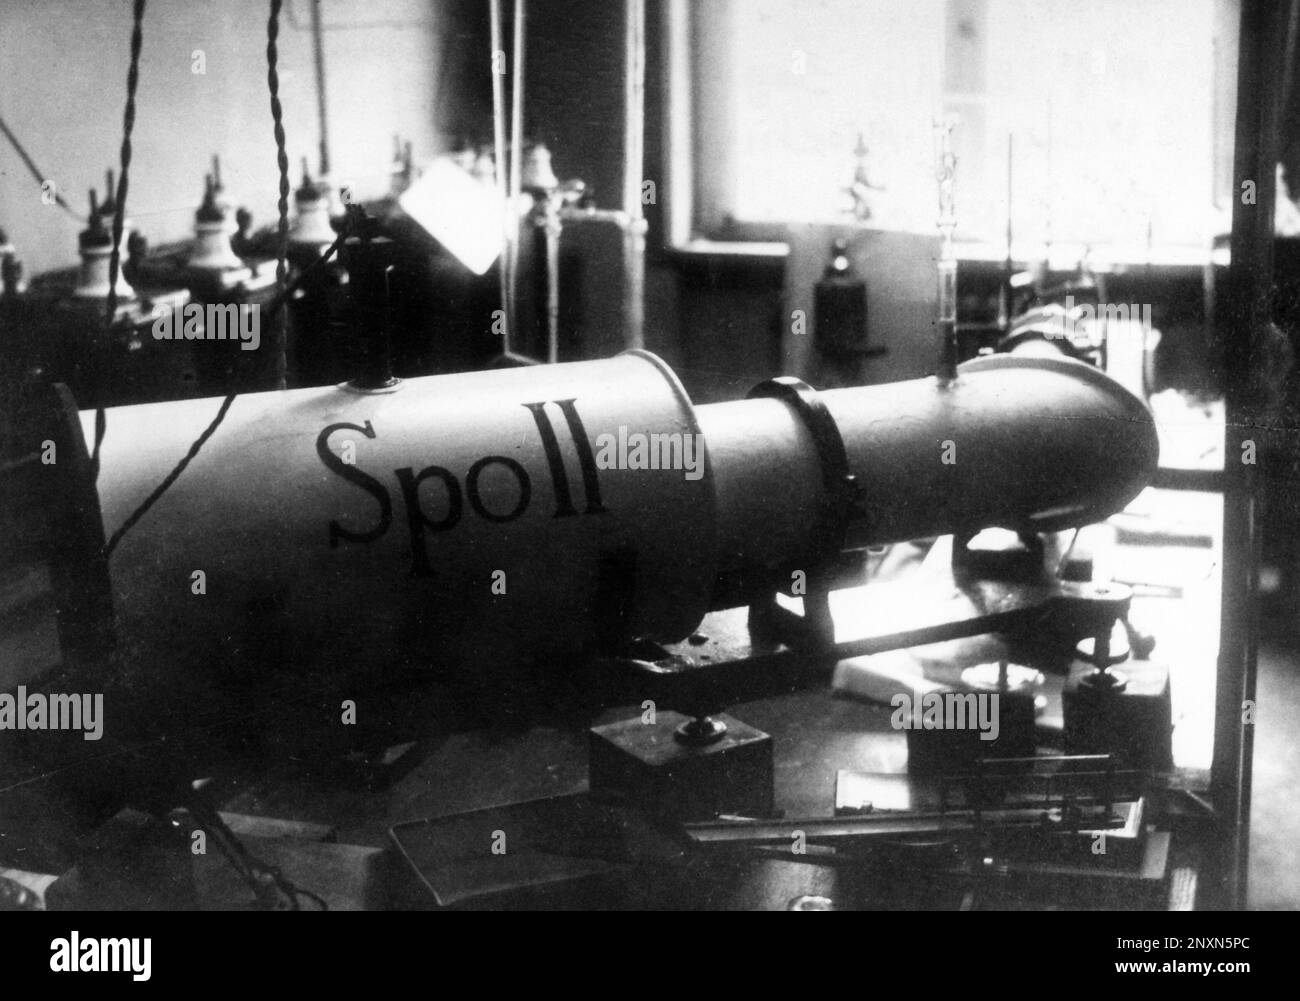 Spettrografo sottovuoto di Hertha Sponer. Hertha Sponer (1895-1968) è stato un fisico e chimico tedesco che ha contribuito alla moderna meccanica quantistica e alla fisica molecolare. Foto Stock